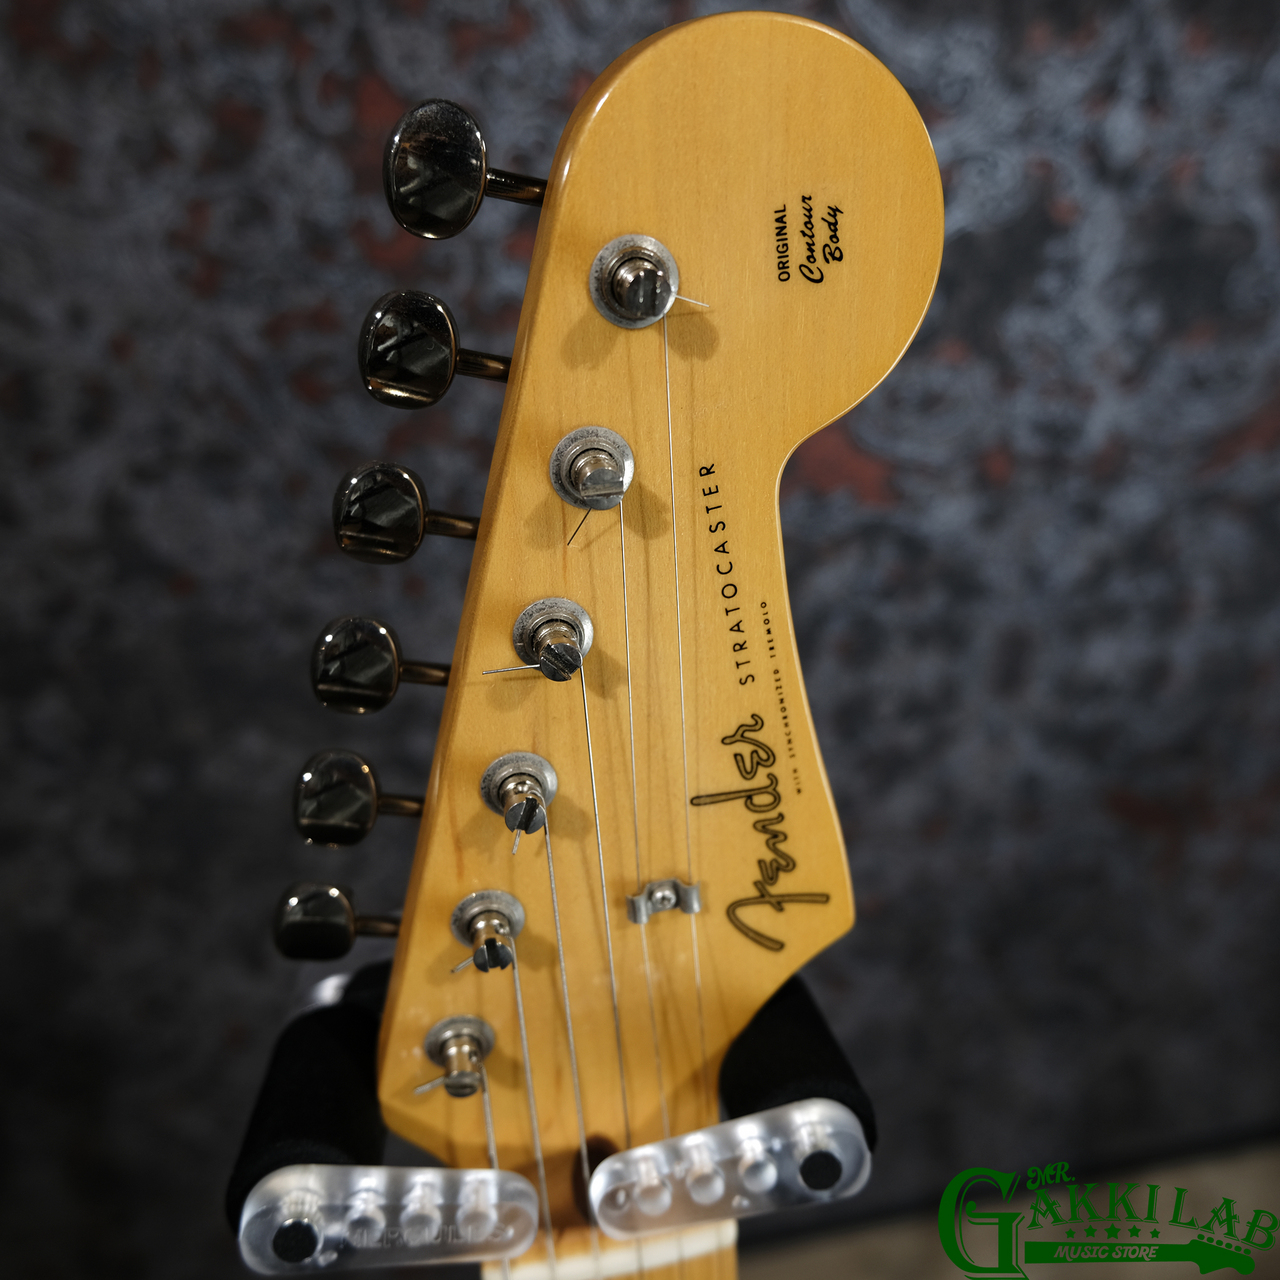 Fender Made in Japan Hybrid 50s Stratocaster Ocean Turquoise